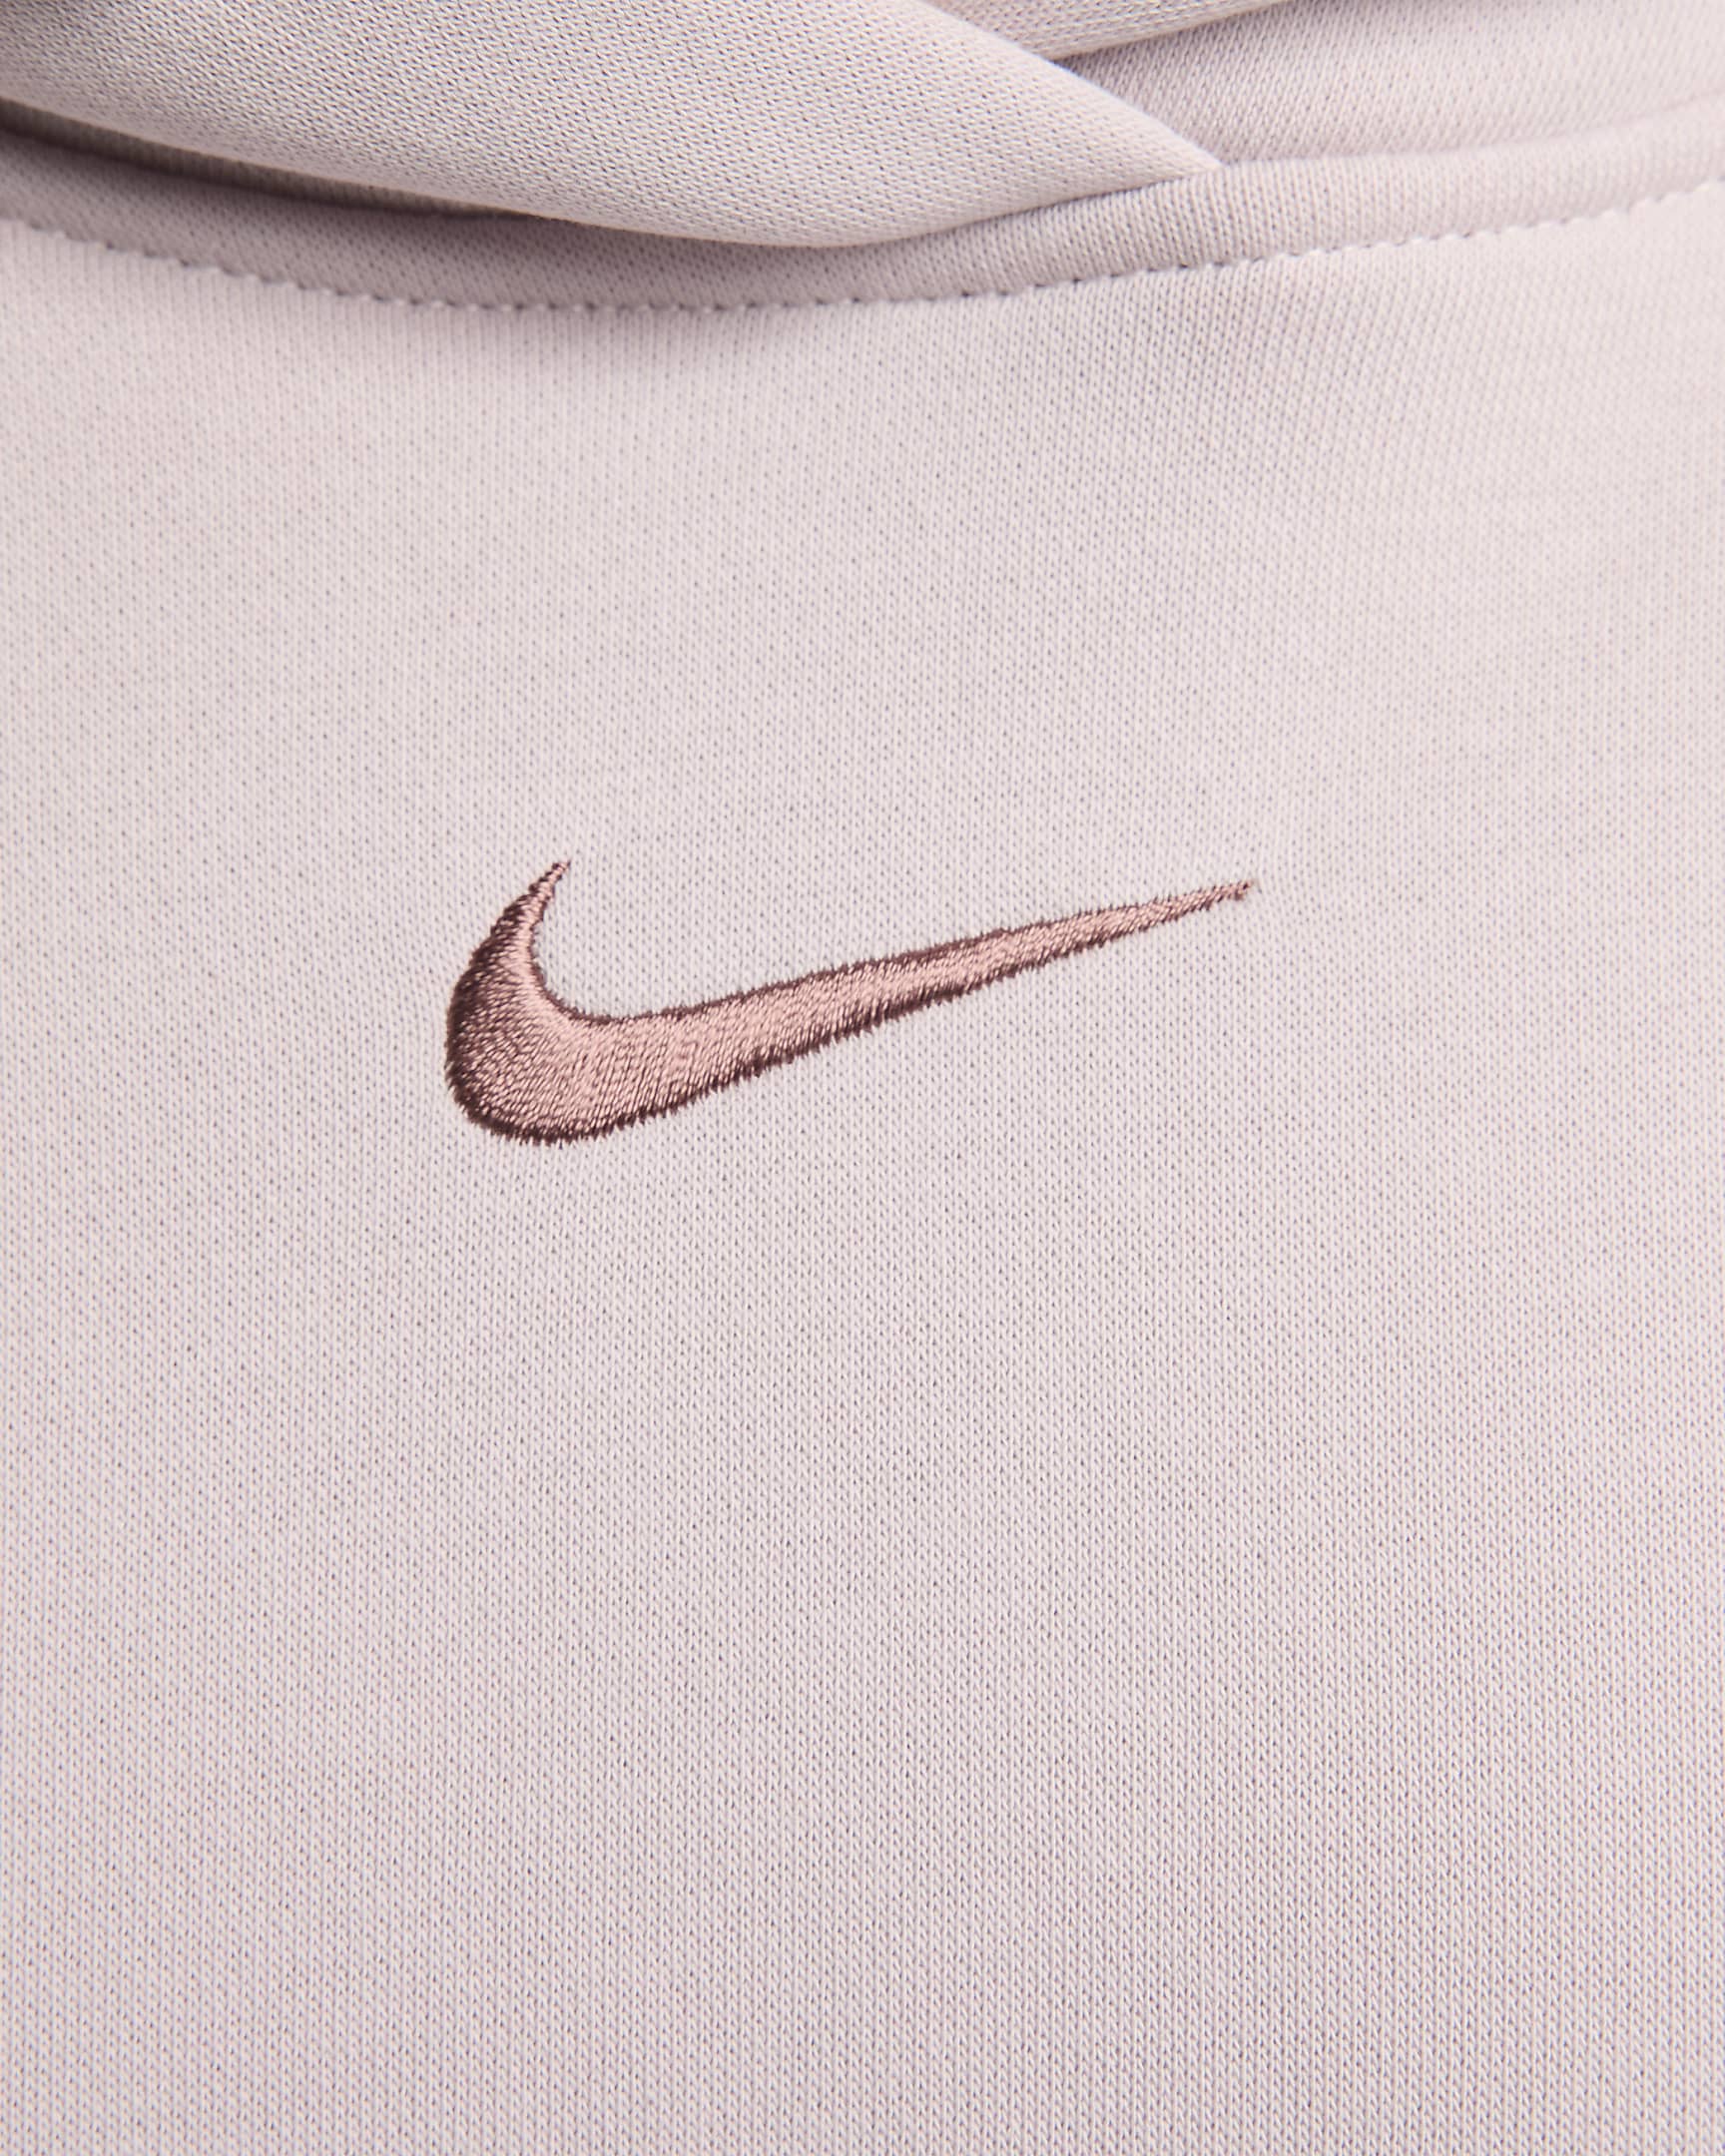 Nike Sportswear Phoenix Fleece Women's Oversized Logo Hoodie